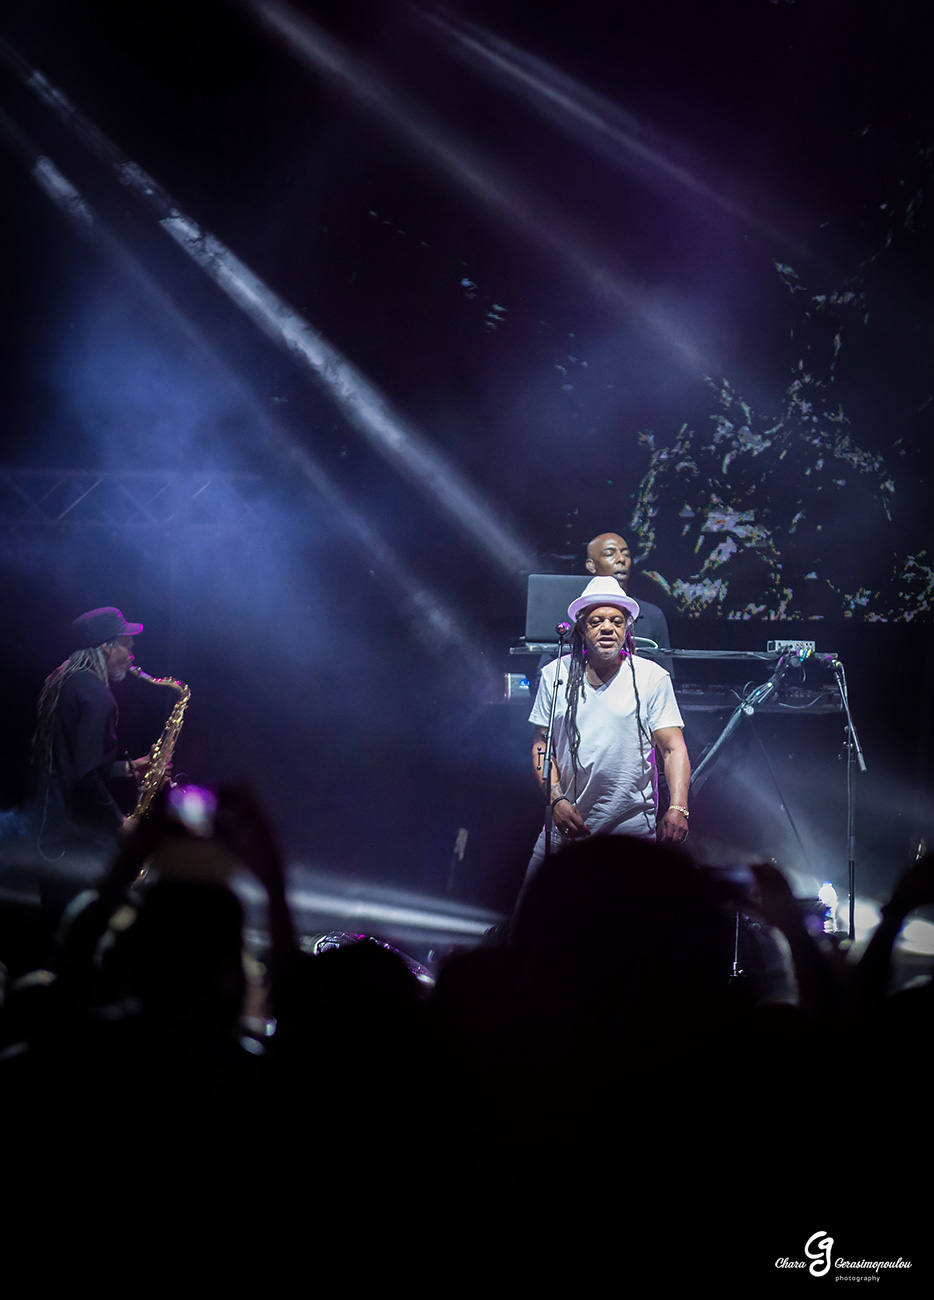 Οι UB40 στη σκηνή του Release Athens Festival 2018